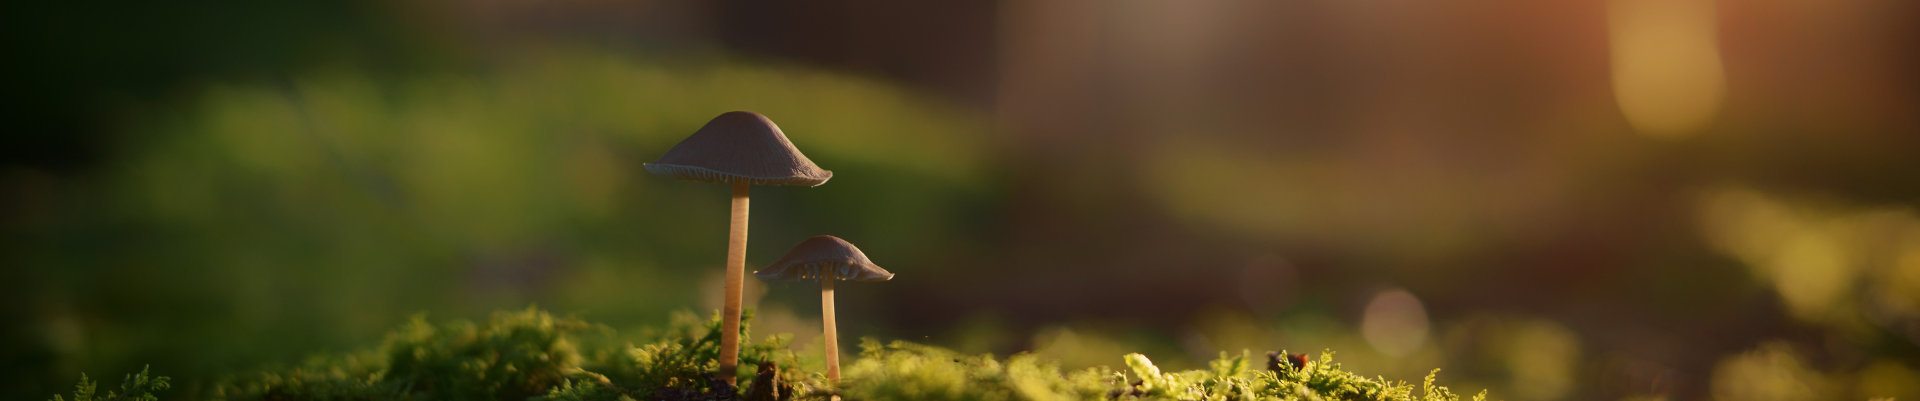 Mushroom growing in moss